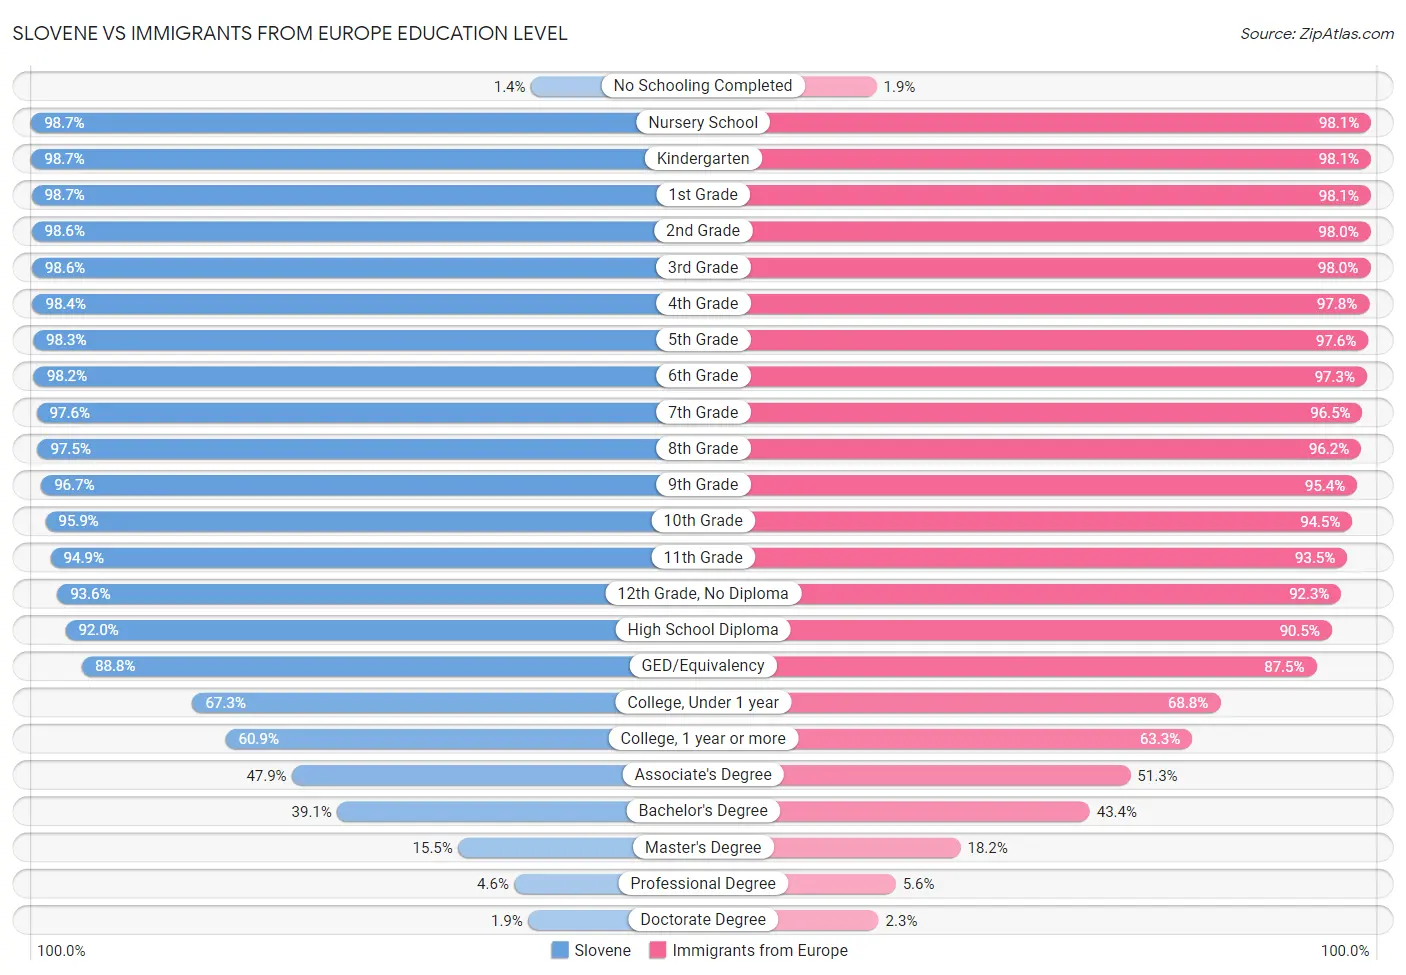 Slovene vs Immigrants from Europe Education Level